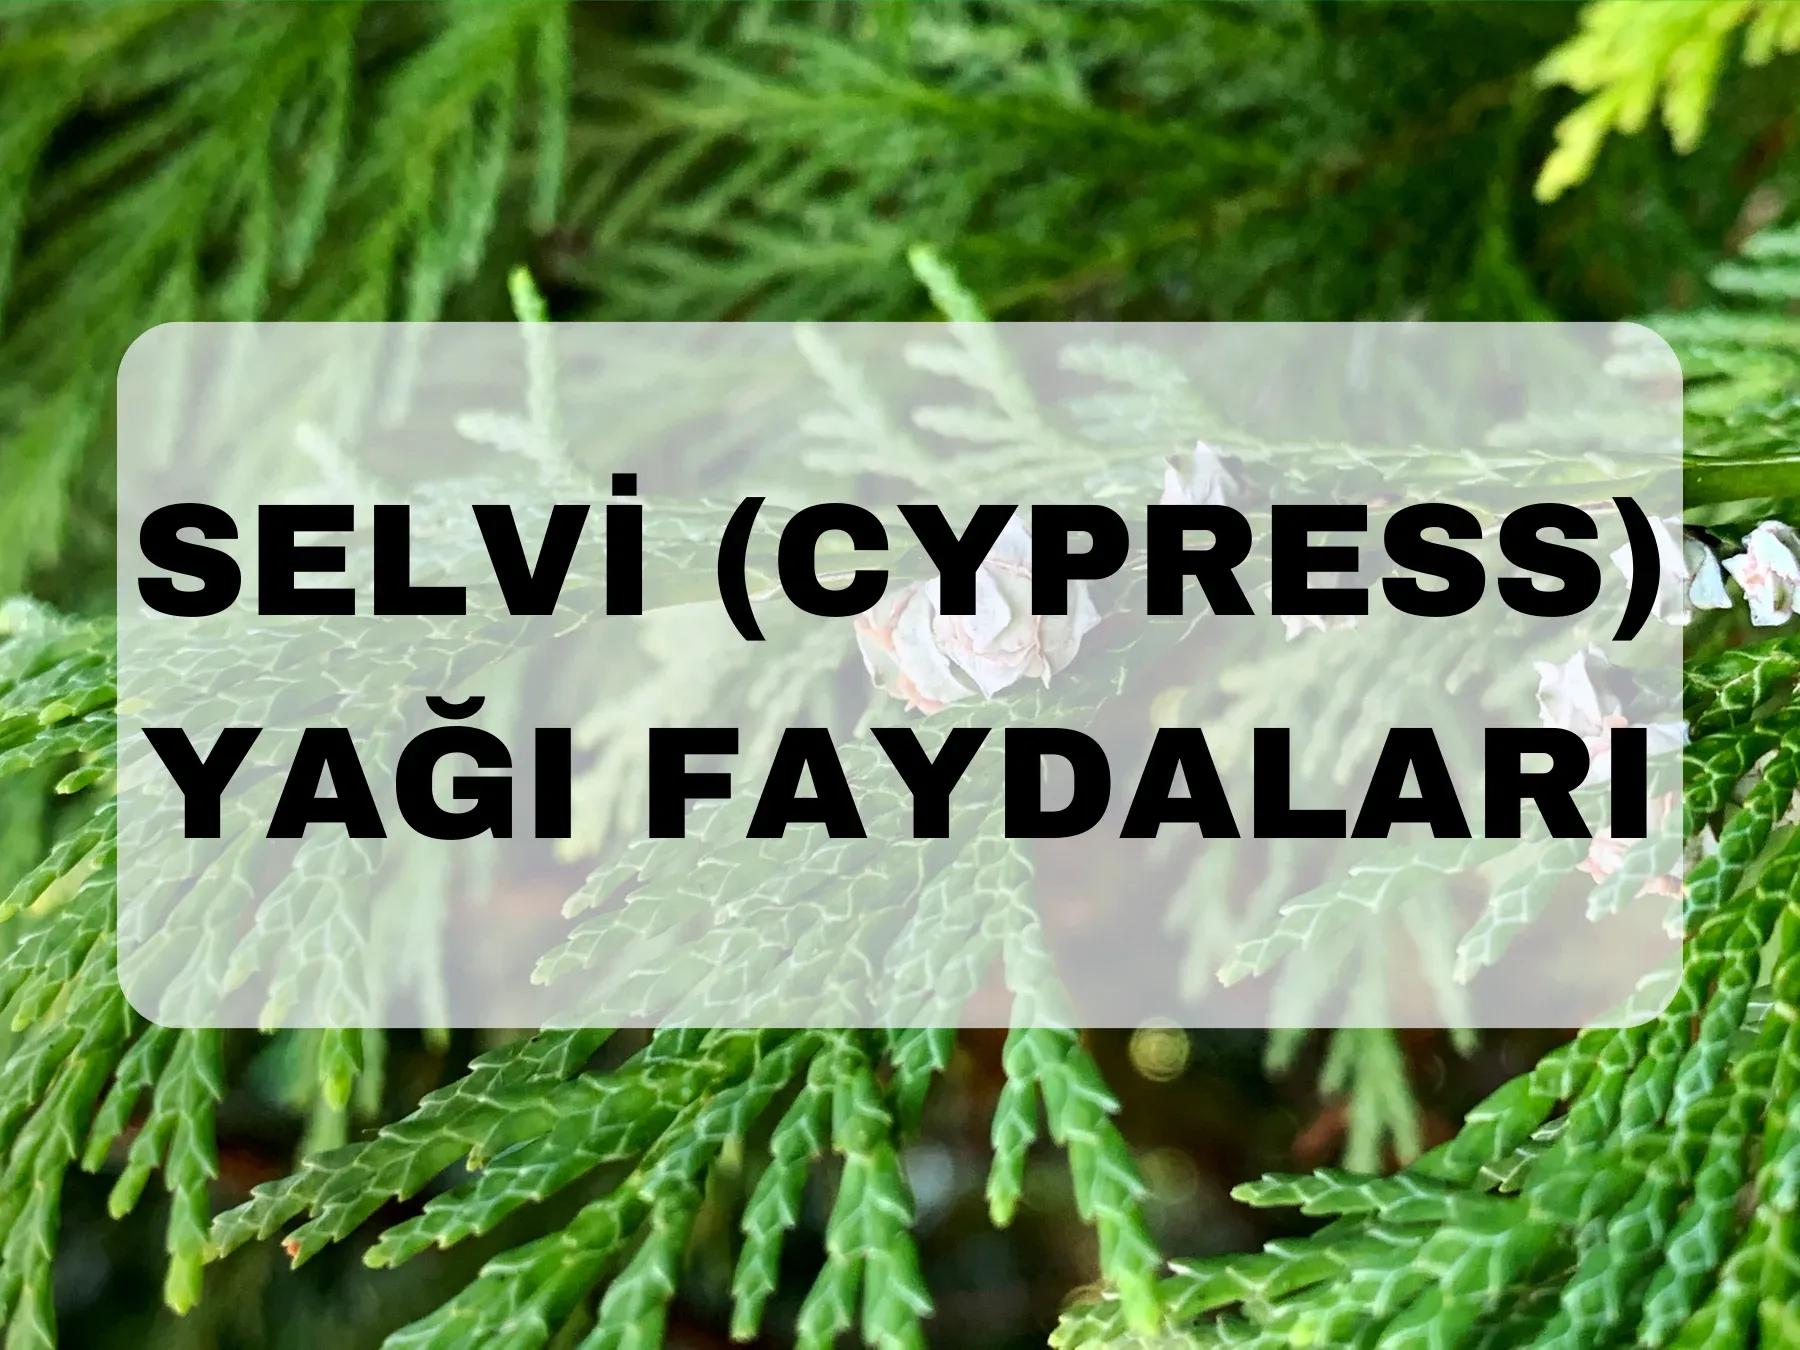 Selvi (Cypress) yağı faydaları